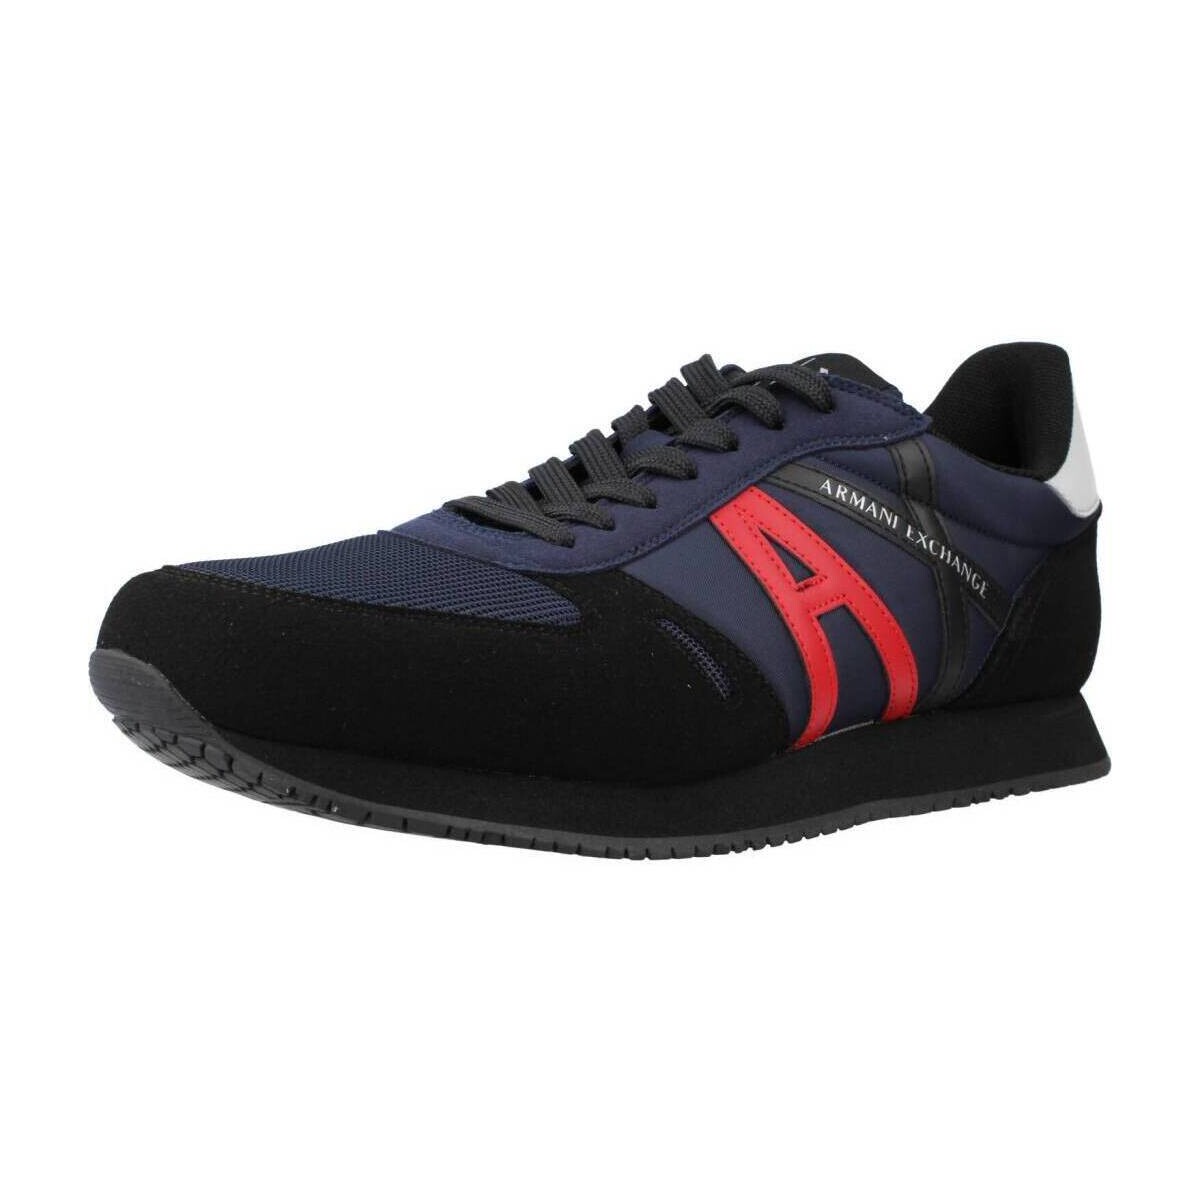 Schoenen Heren Sneakers EAX XUX017 XCC68 Blauw